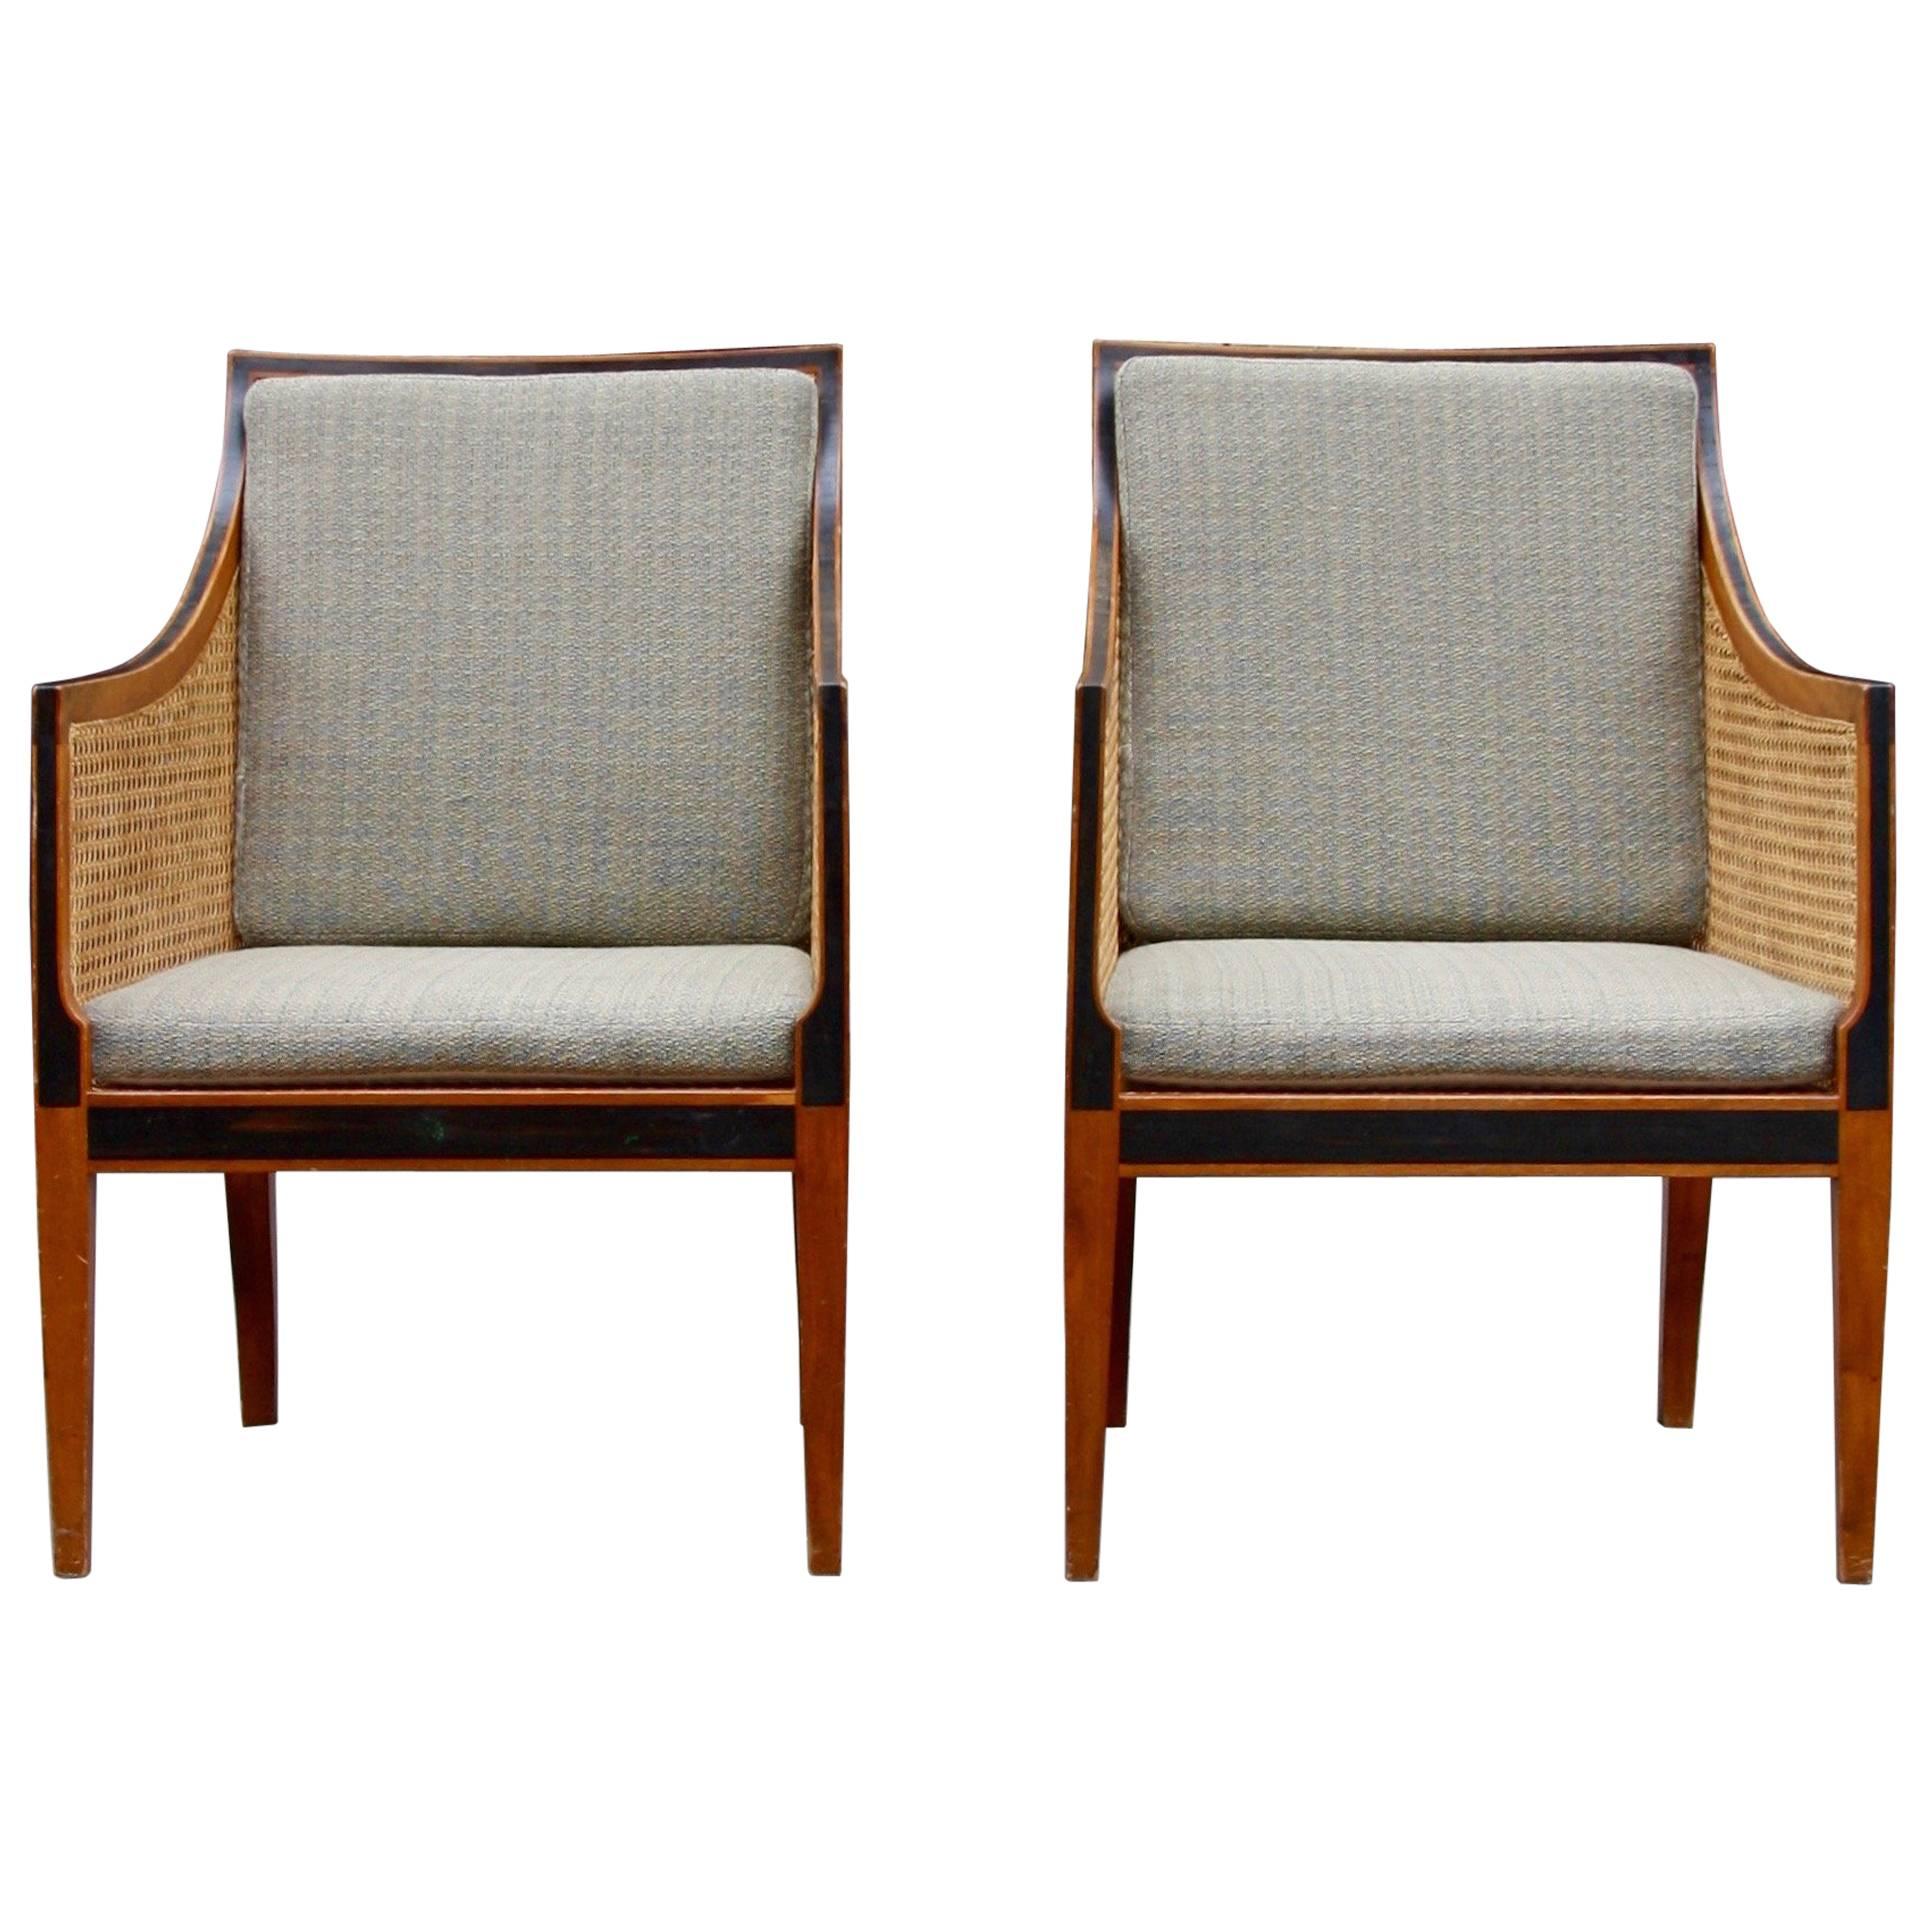 Kaare Klint 'Bergere' Chairs, Model 4488, Made by Rud Rasmussen